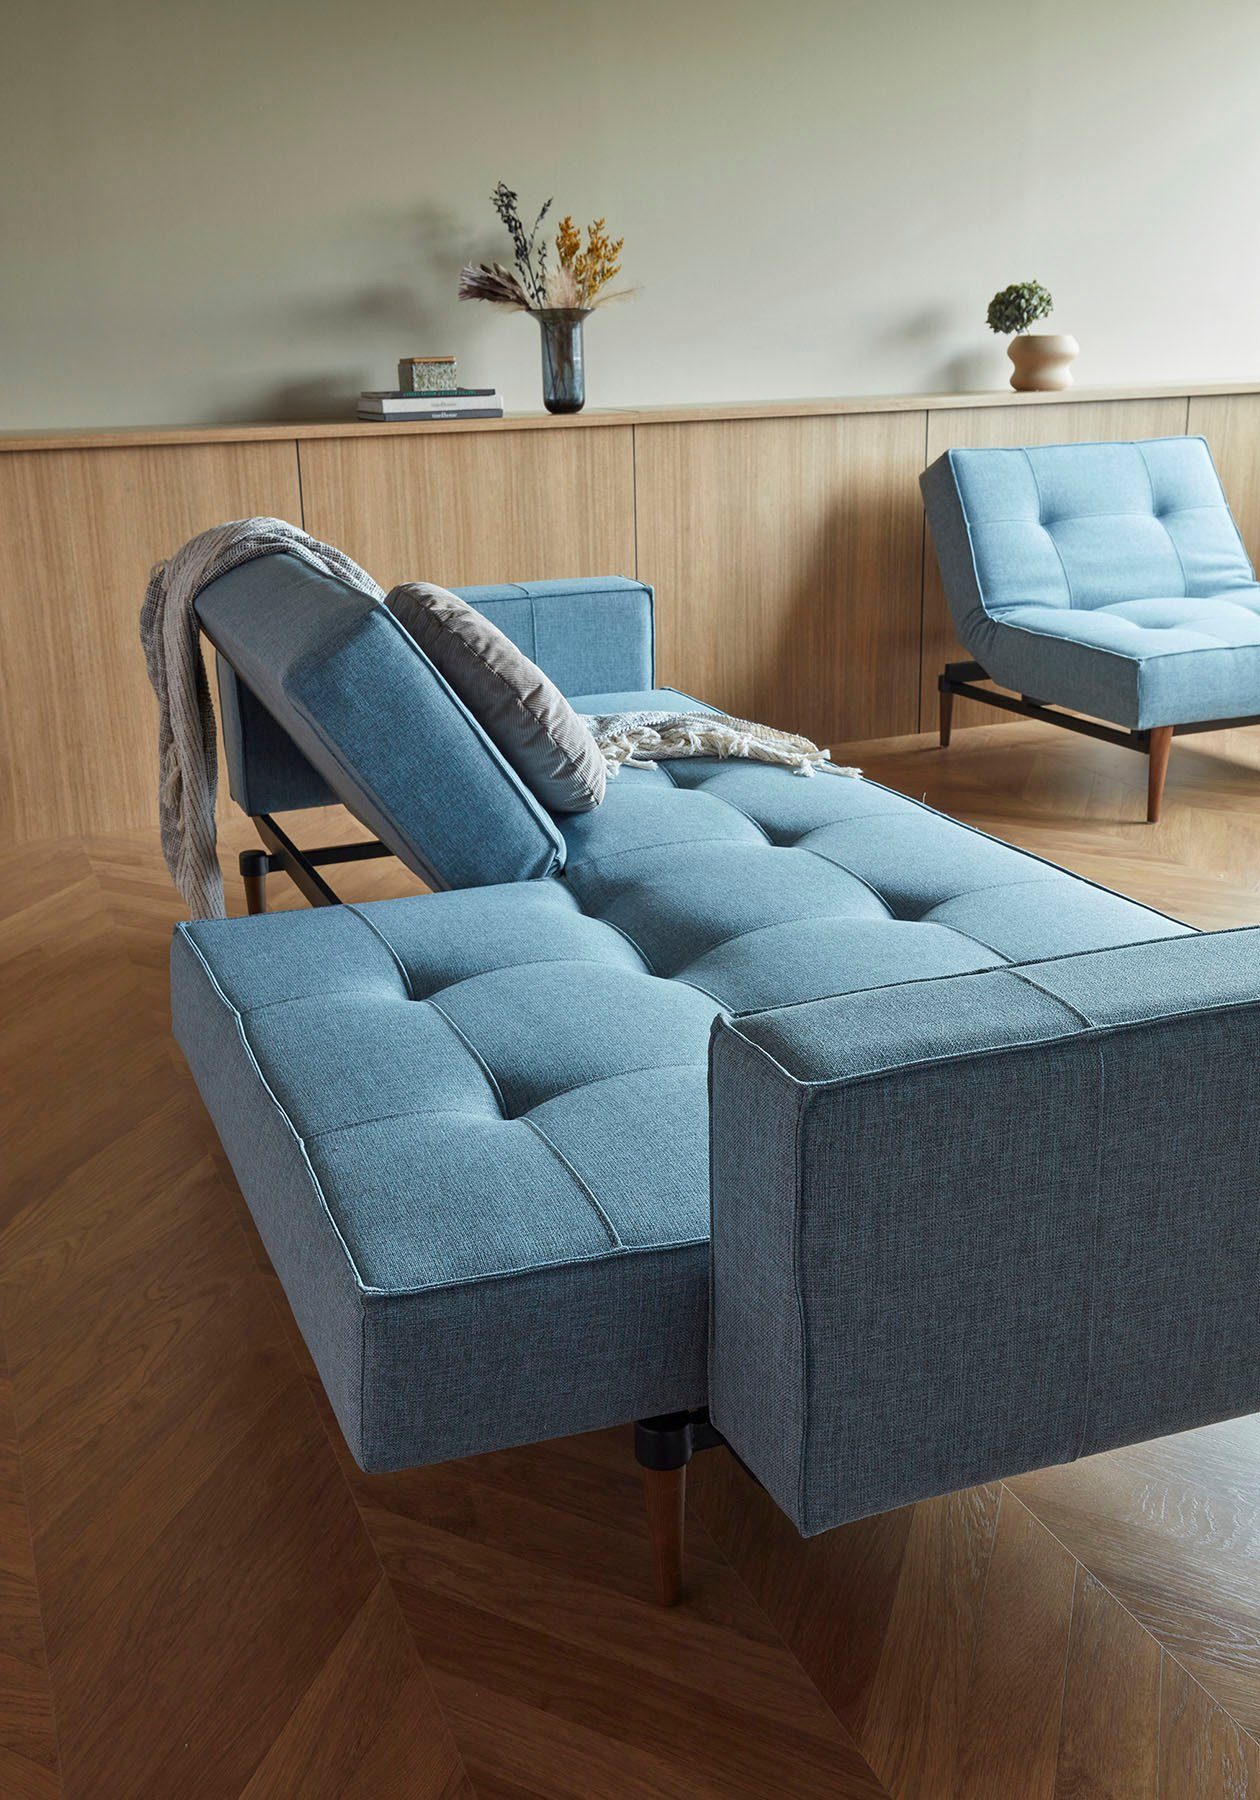 Armlehne in Styletto Beinen, Design dunklen mit Splitback, Sofa LIVING und INNOVATION ™ skandinavischen